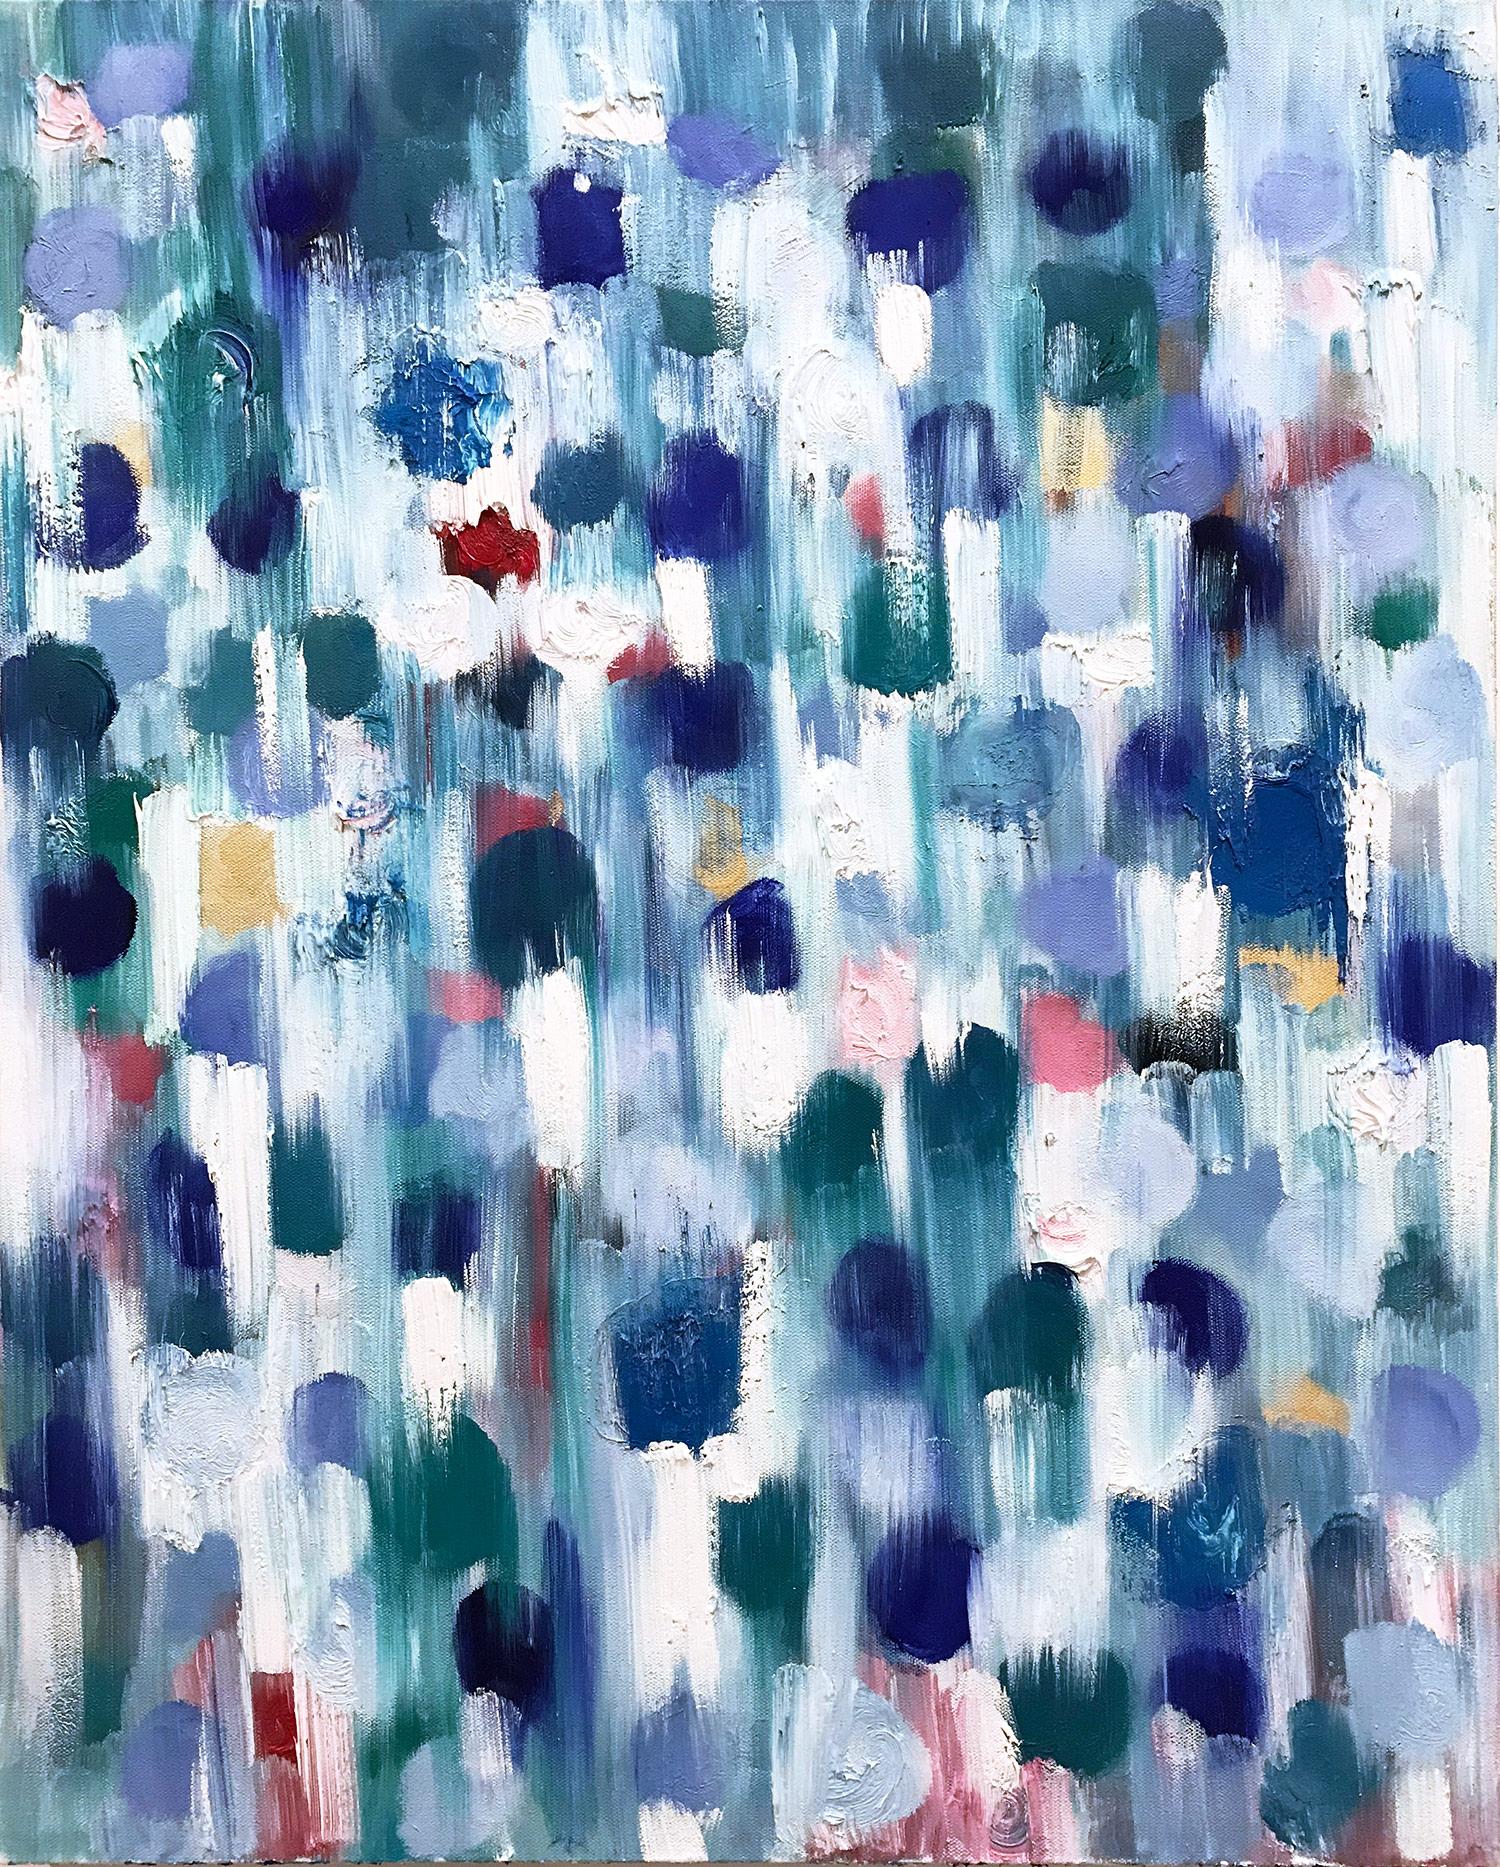 Abstract Painting Cindy Shaoul - "Dripping Dots - Cypress" Peinture à l'huile contemporaine colorée sur toile